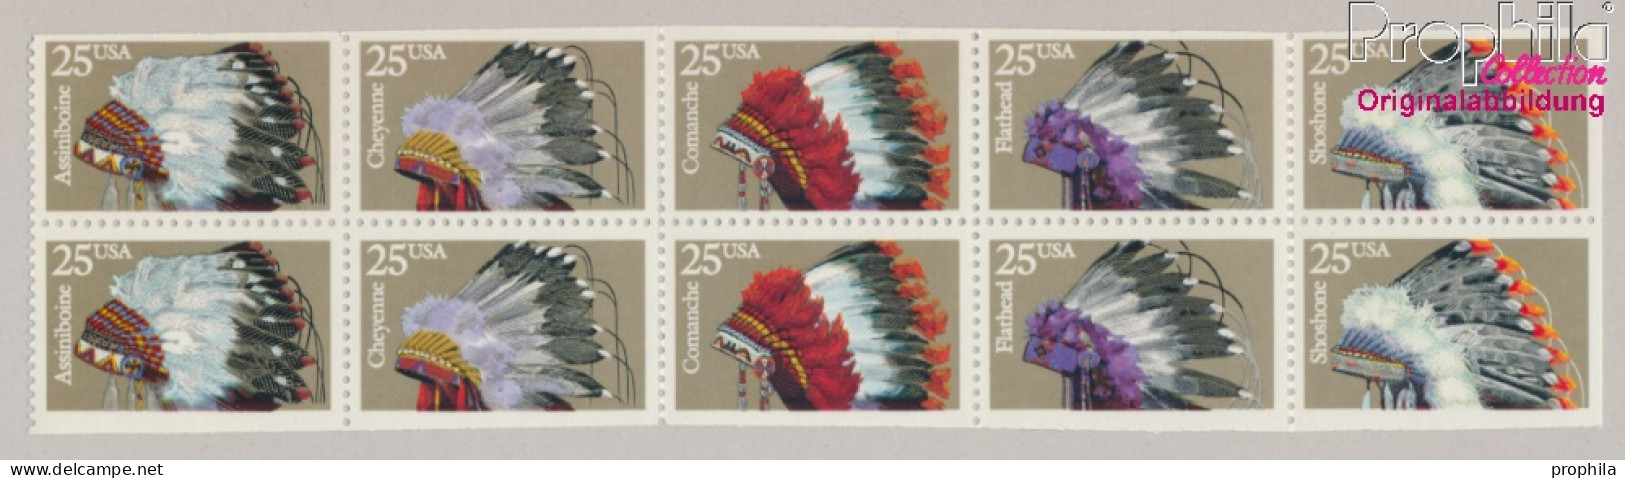 USA 2098-2102 Zehnerblock (kompl.Ausg.) Postfrisch 1990 Indianer Kopfschmuck (10368265 - Ongebruikt